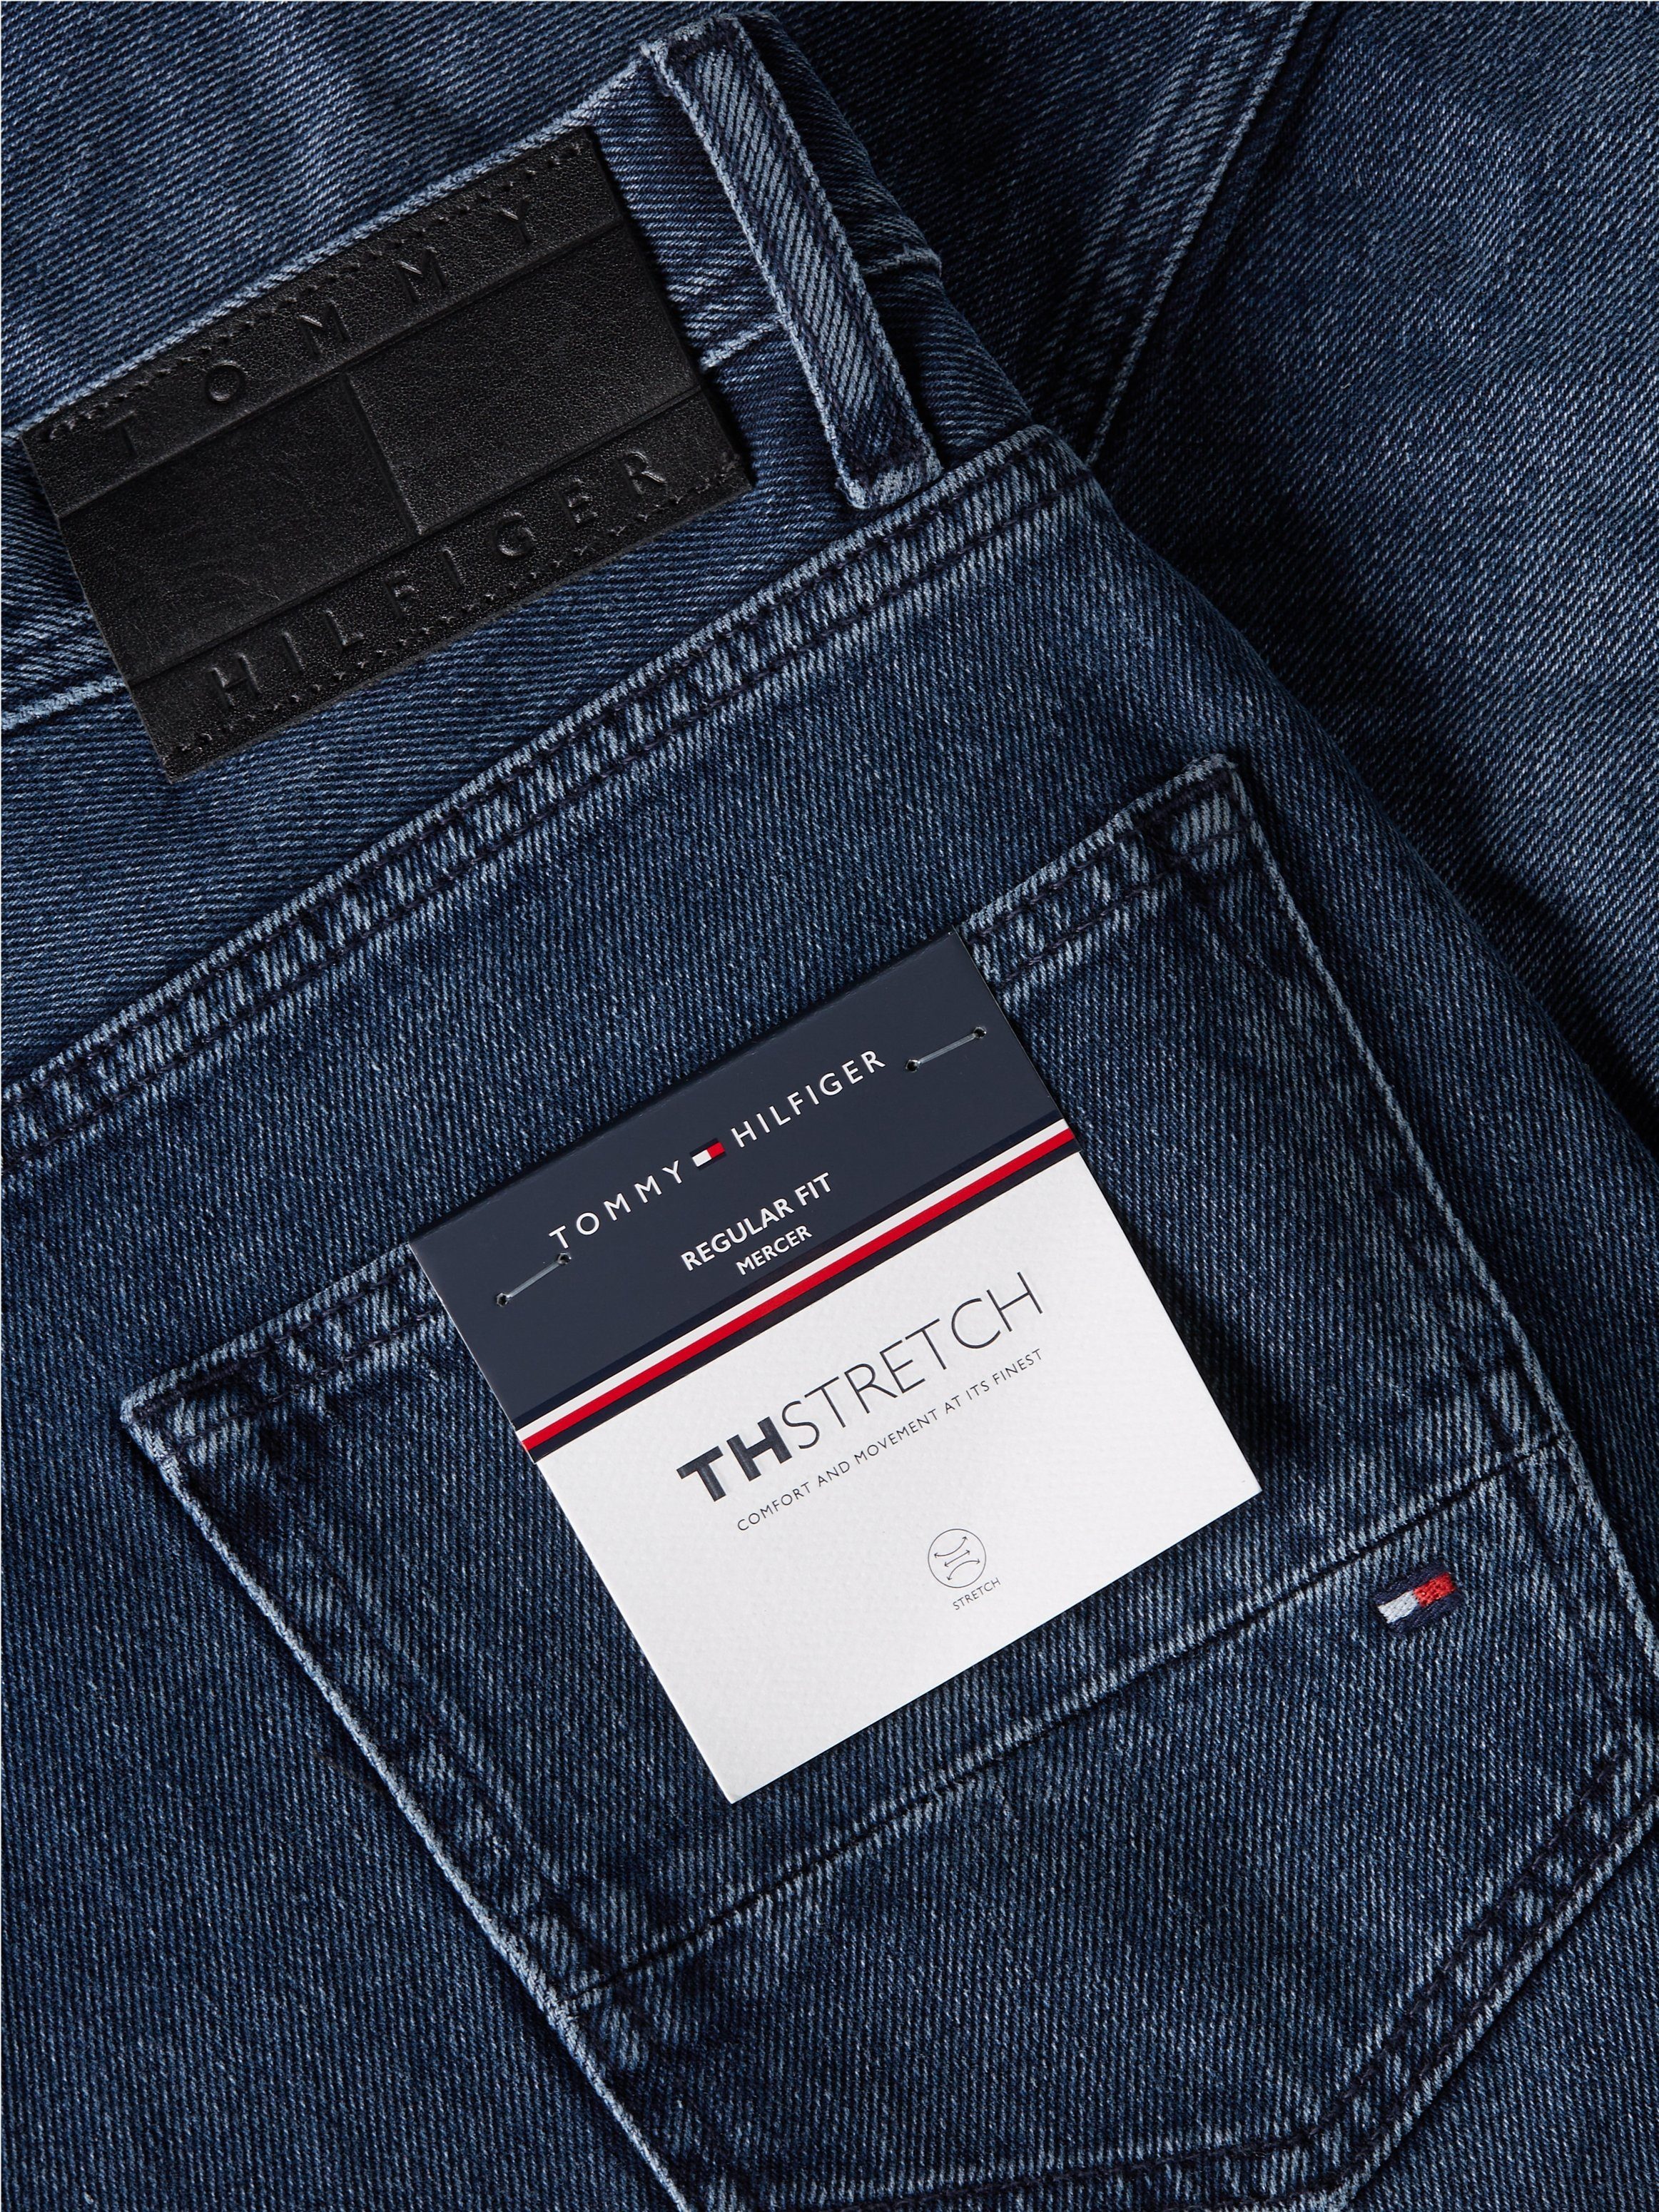 Black Straight-Jeans REGULAR Tommy MERCER Blue Banks Hilfiger STR